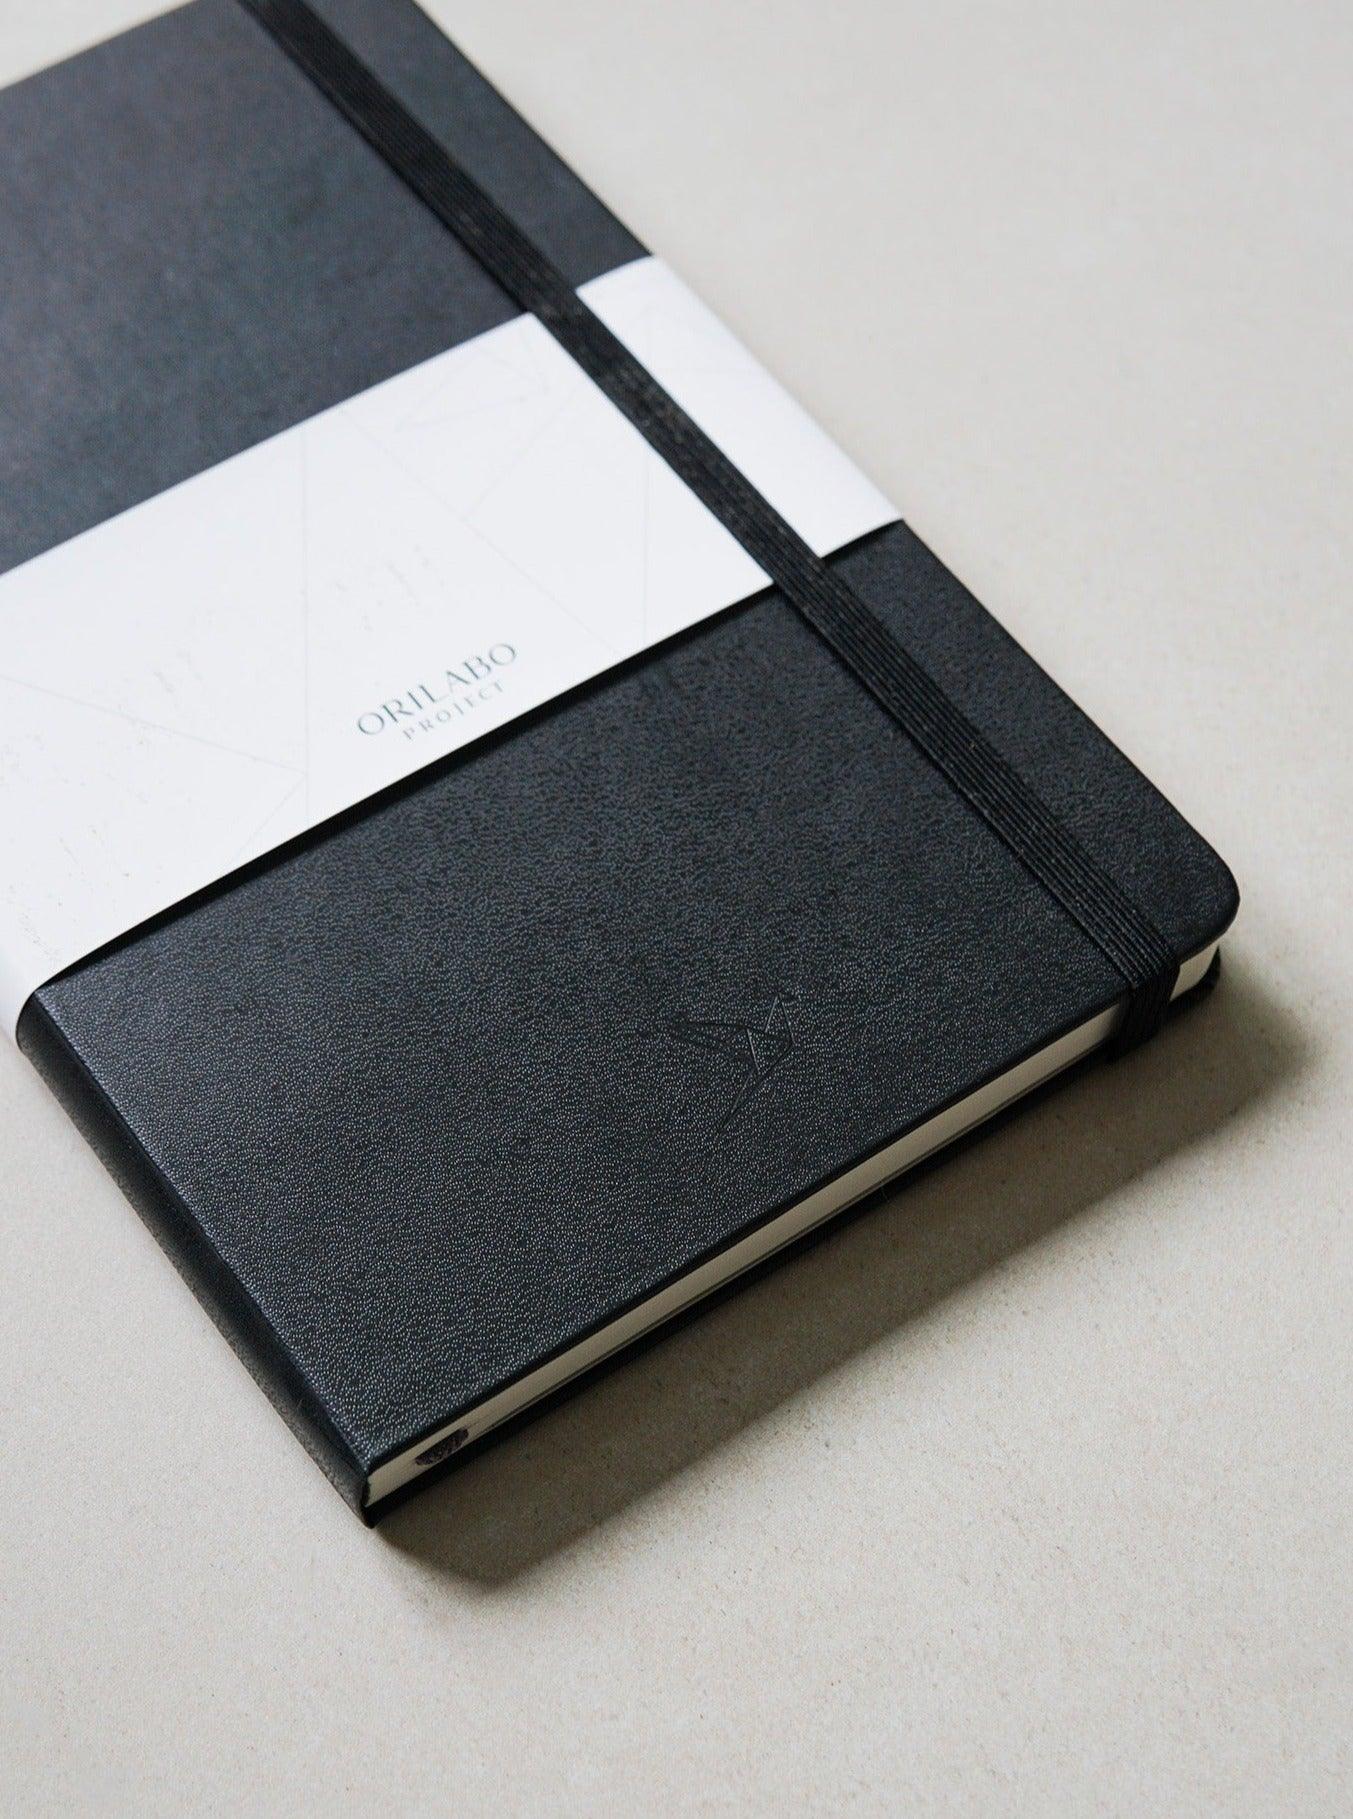 
                  
                    ORILABO x Moleskine Hardcover Note Book - ORILABO Project
                  
                